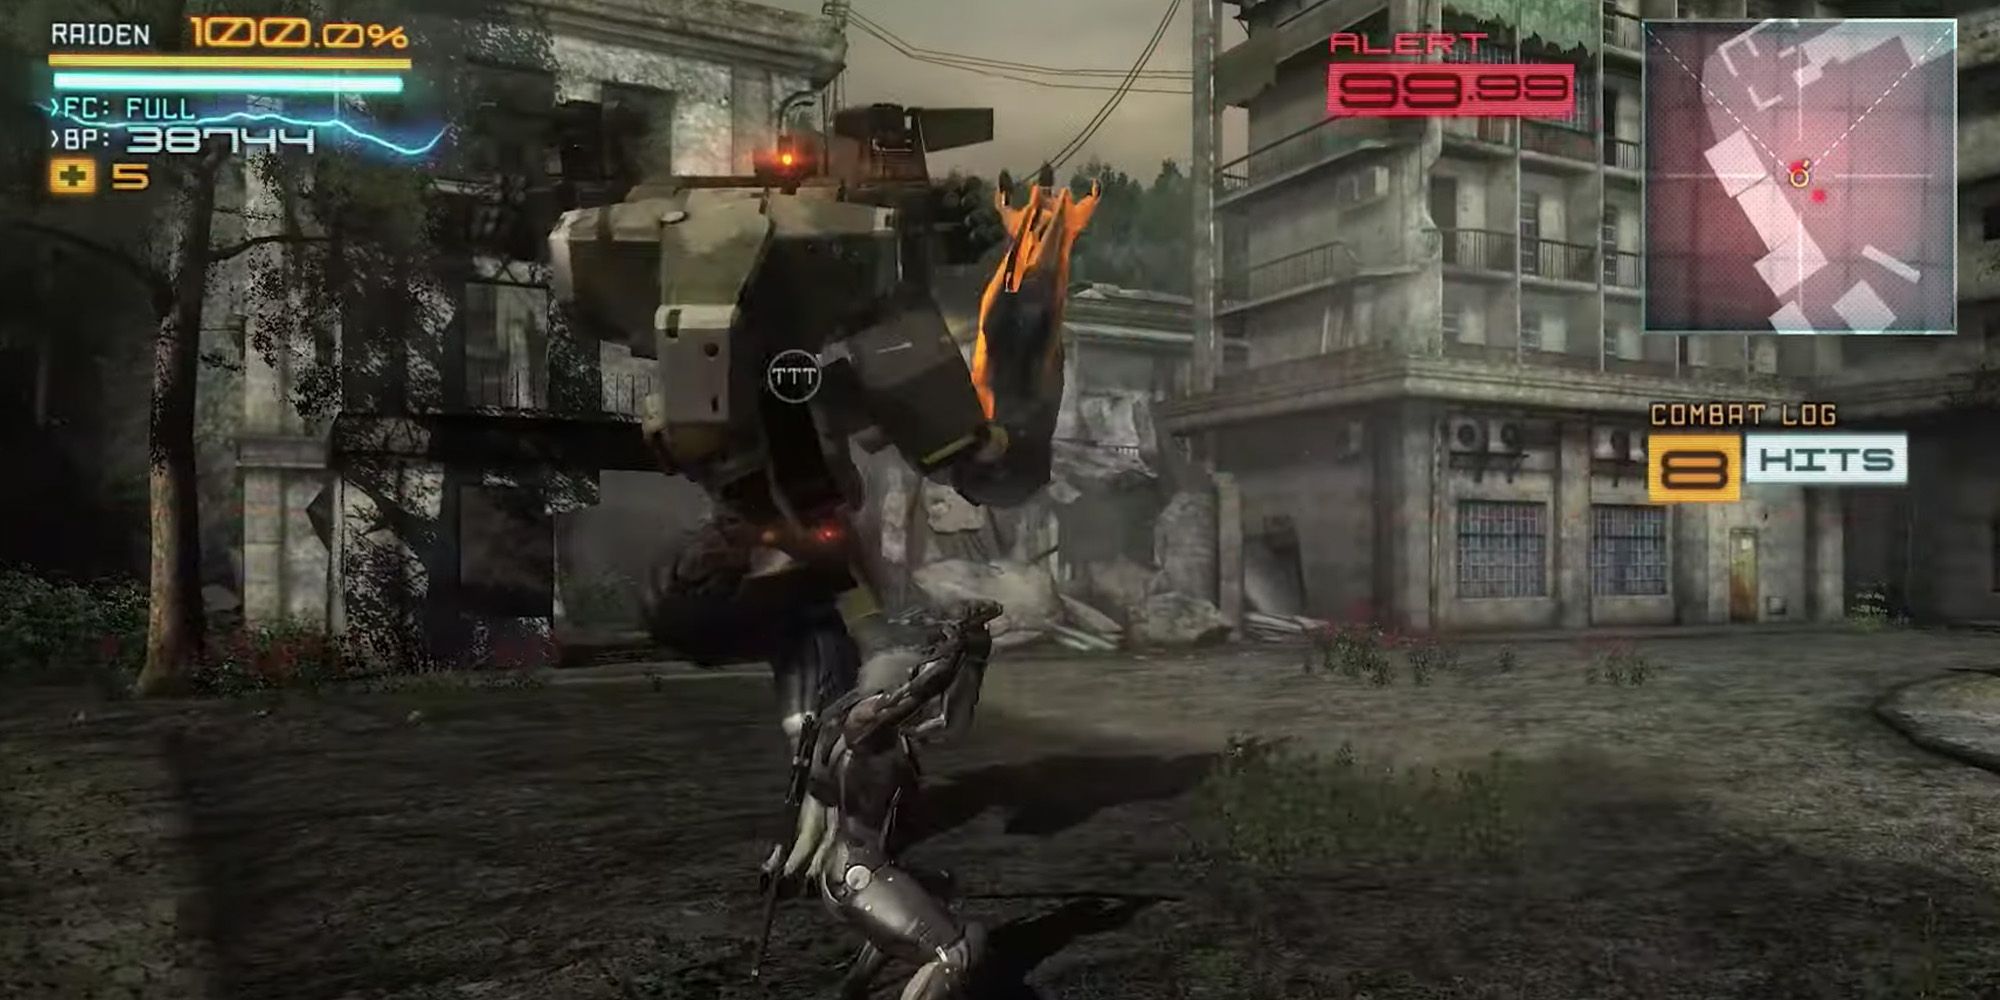 Metal Gear Rising: Revengeance screenshot of Raiden parrying in an attack from a Gekko mech